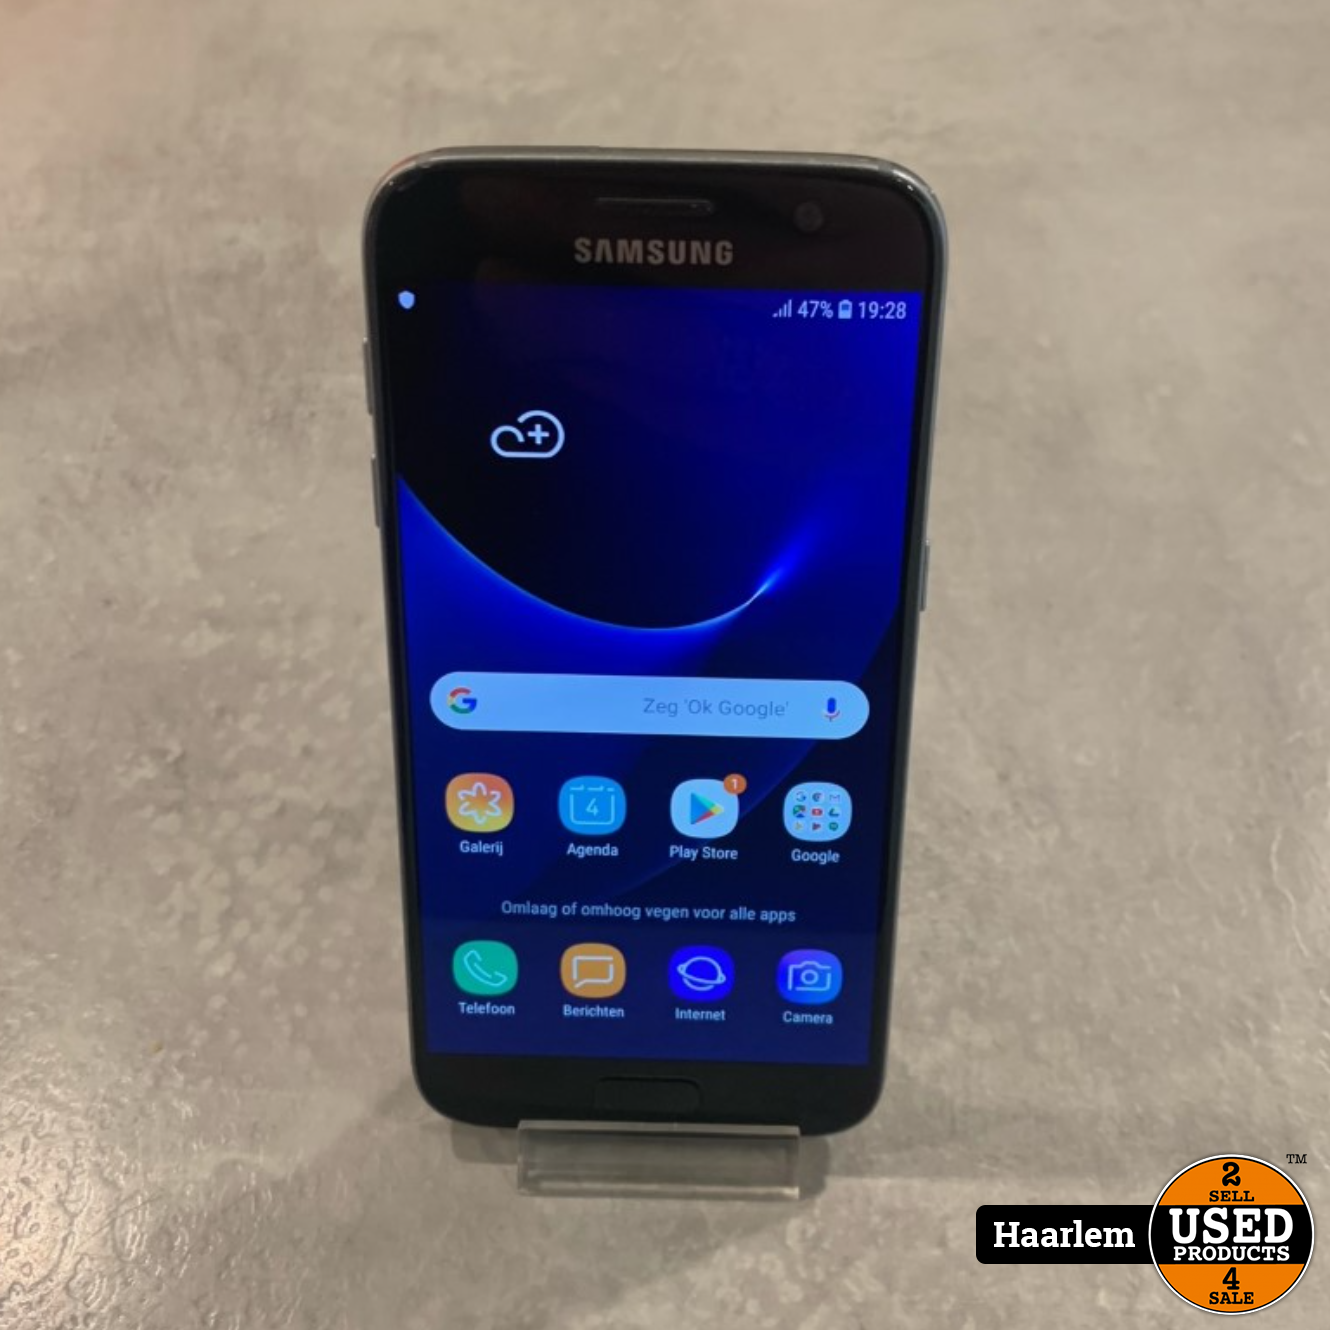 Buitenshuis Democratie Aan de overkant Samsung Galaxy S7 32Gb Black in nette staat - Used Products Haarlem  Cronjéstraat